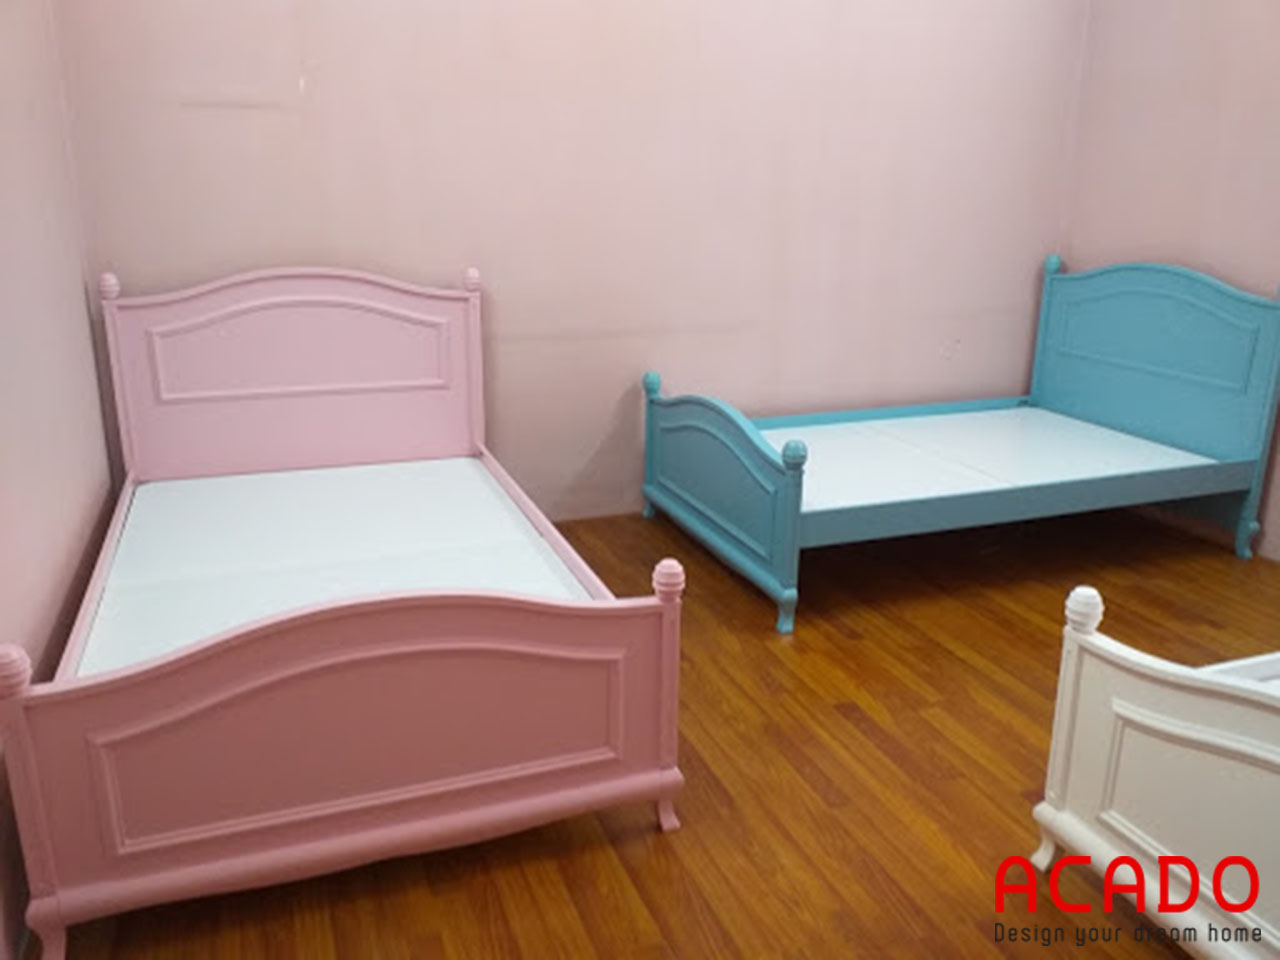 Giường ngủ trẻ em 1m2x2m - nội thất Aacdo